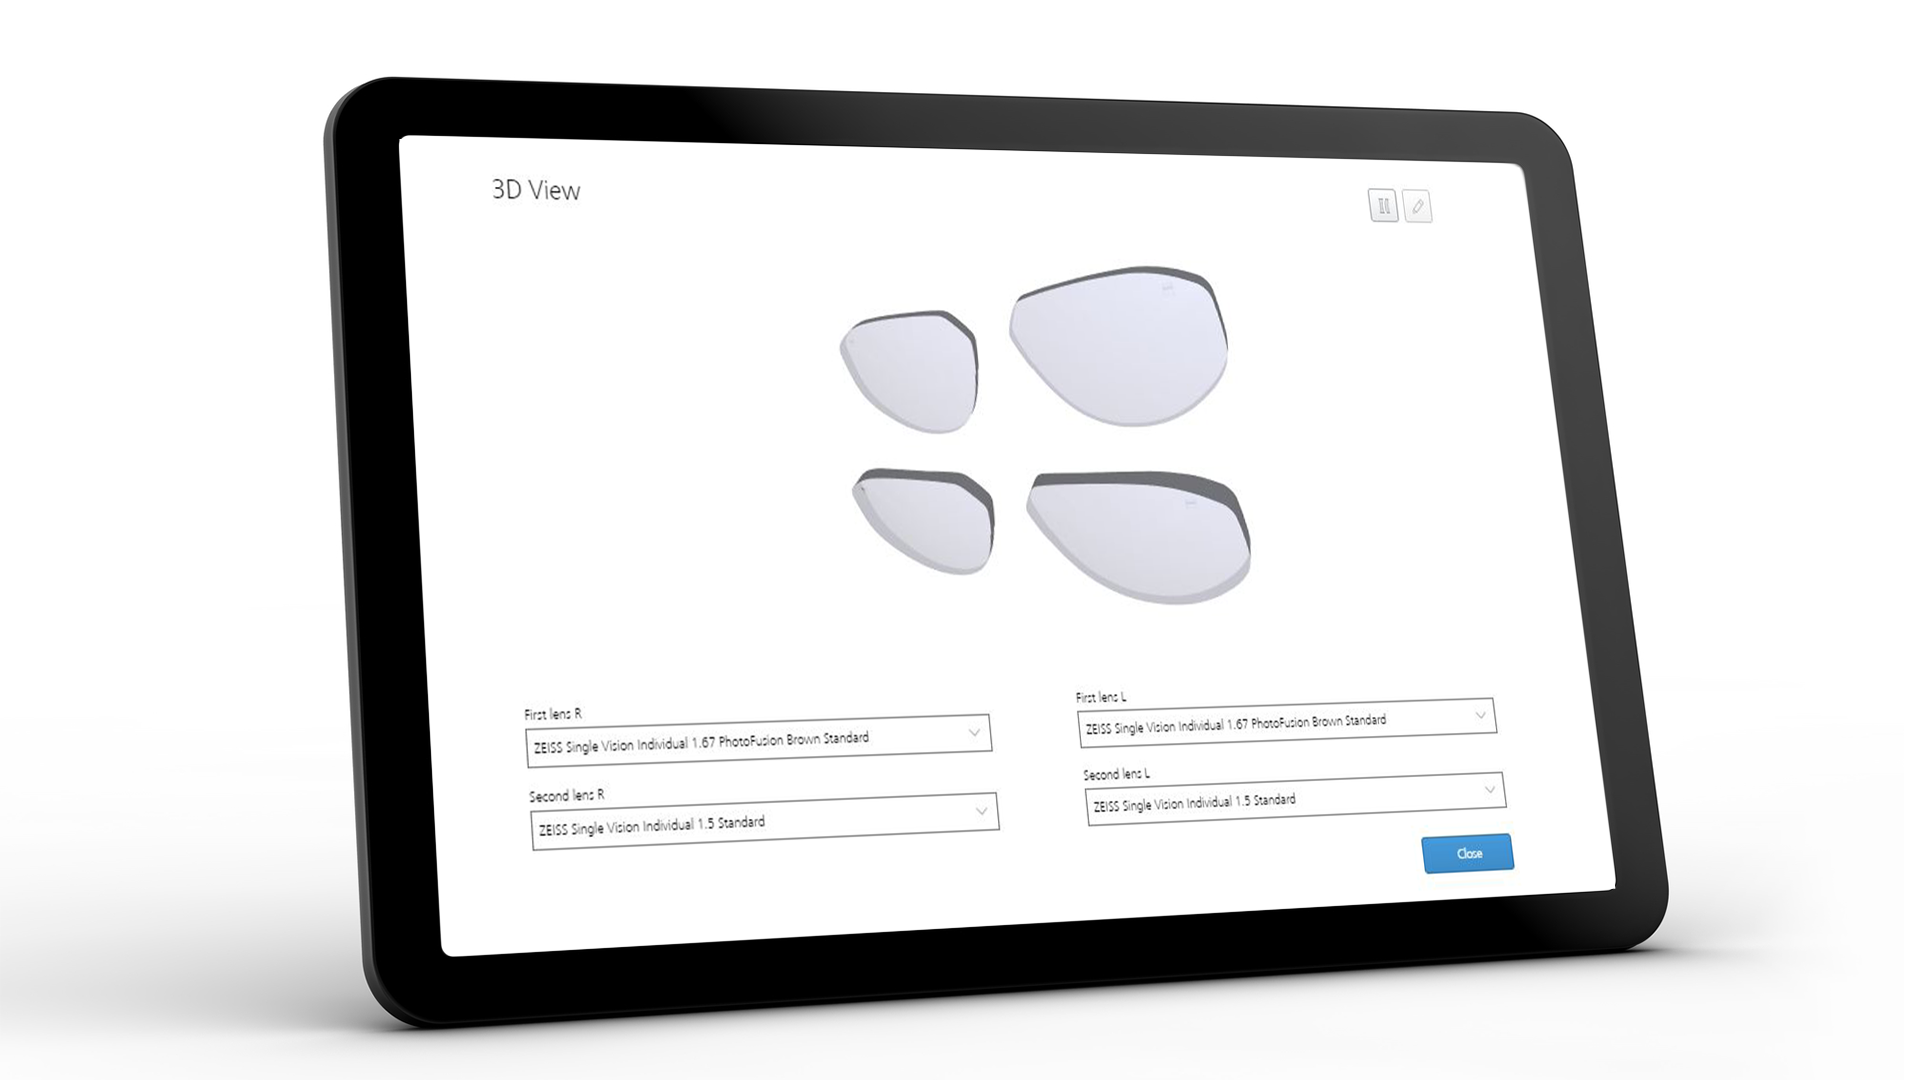 Pantalla de tableta con la interfaz de ZEISS VISUSTORE para la vista en 3D 